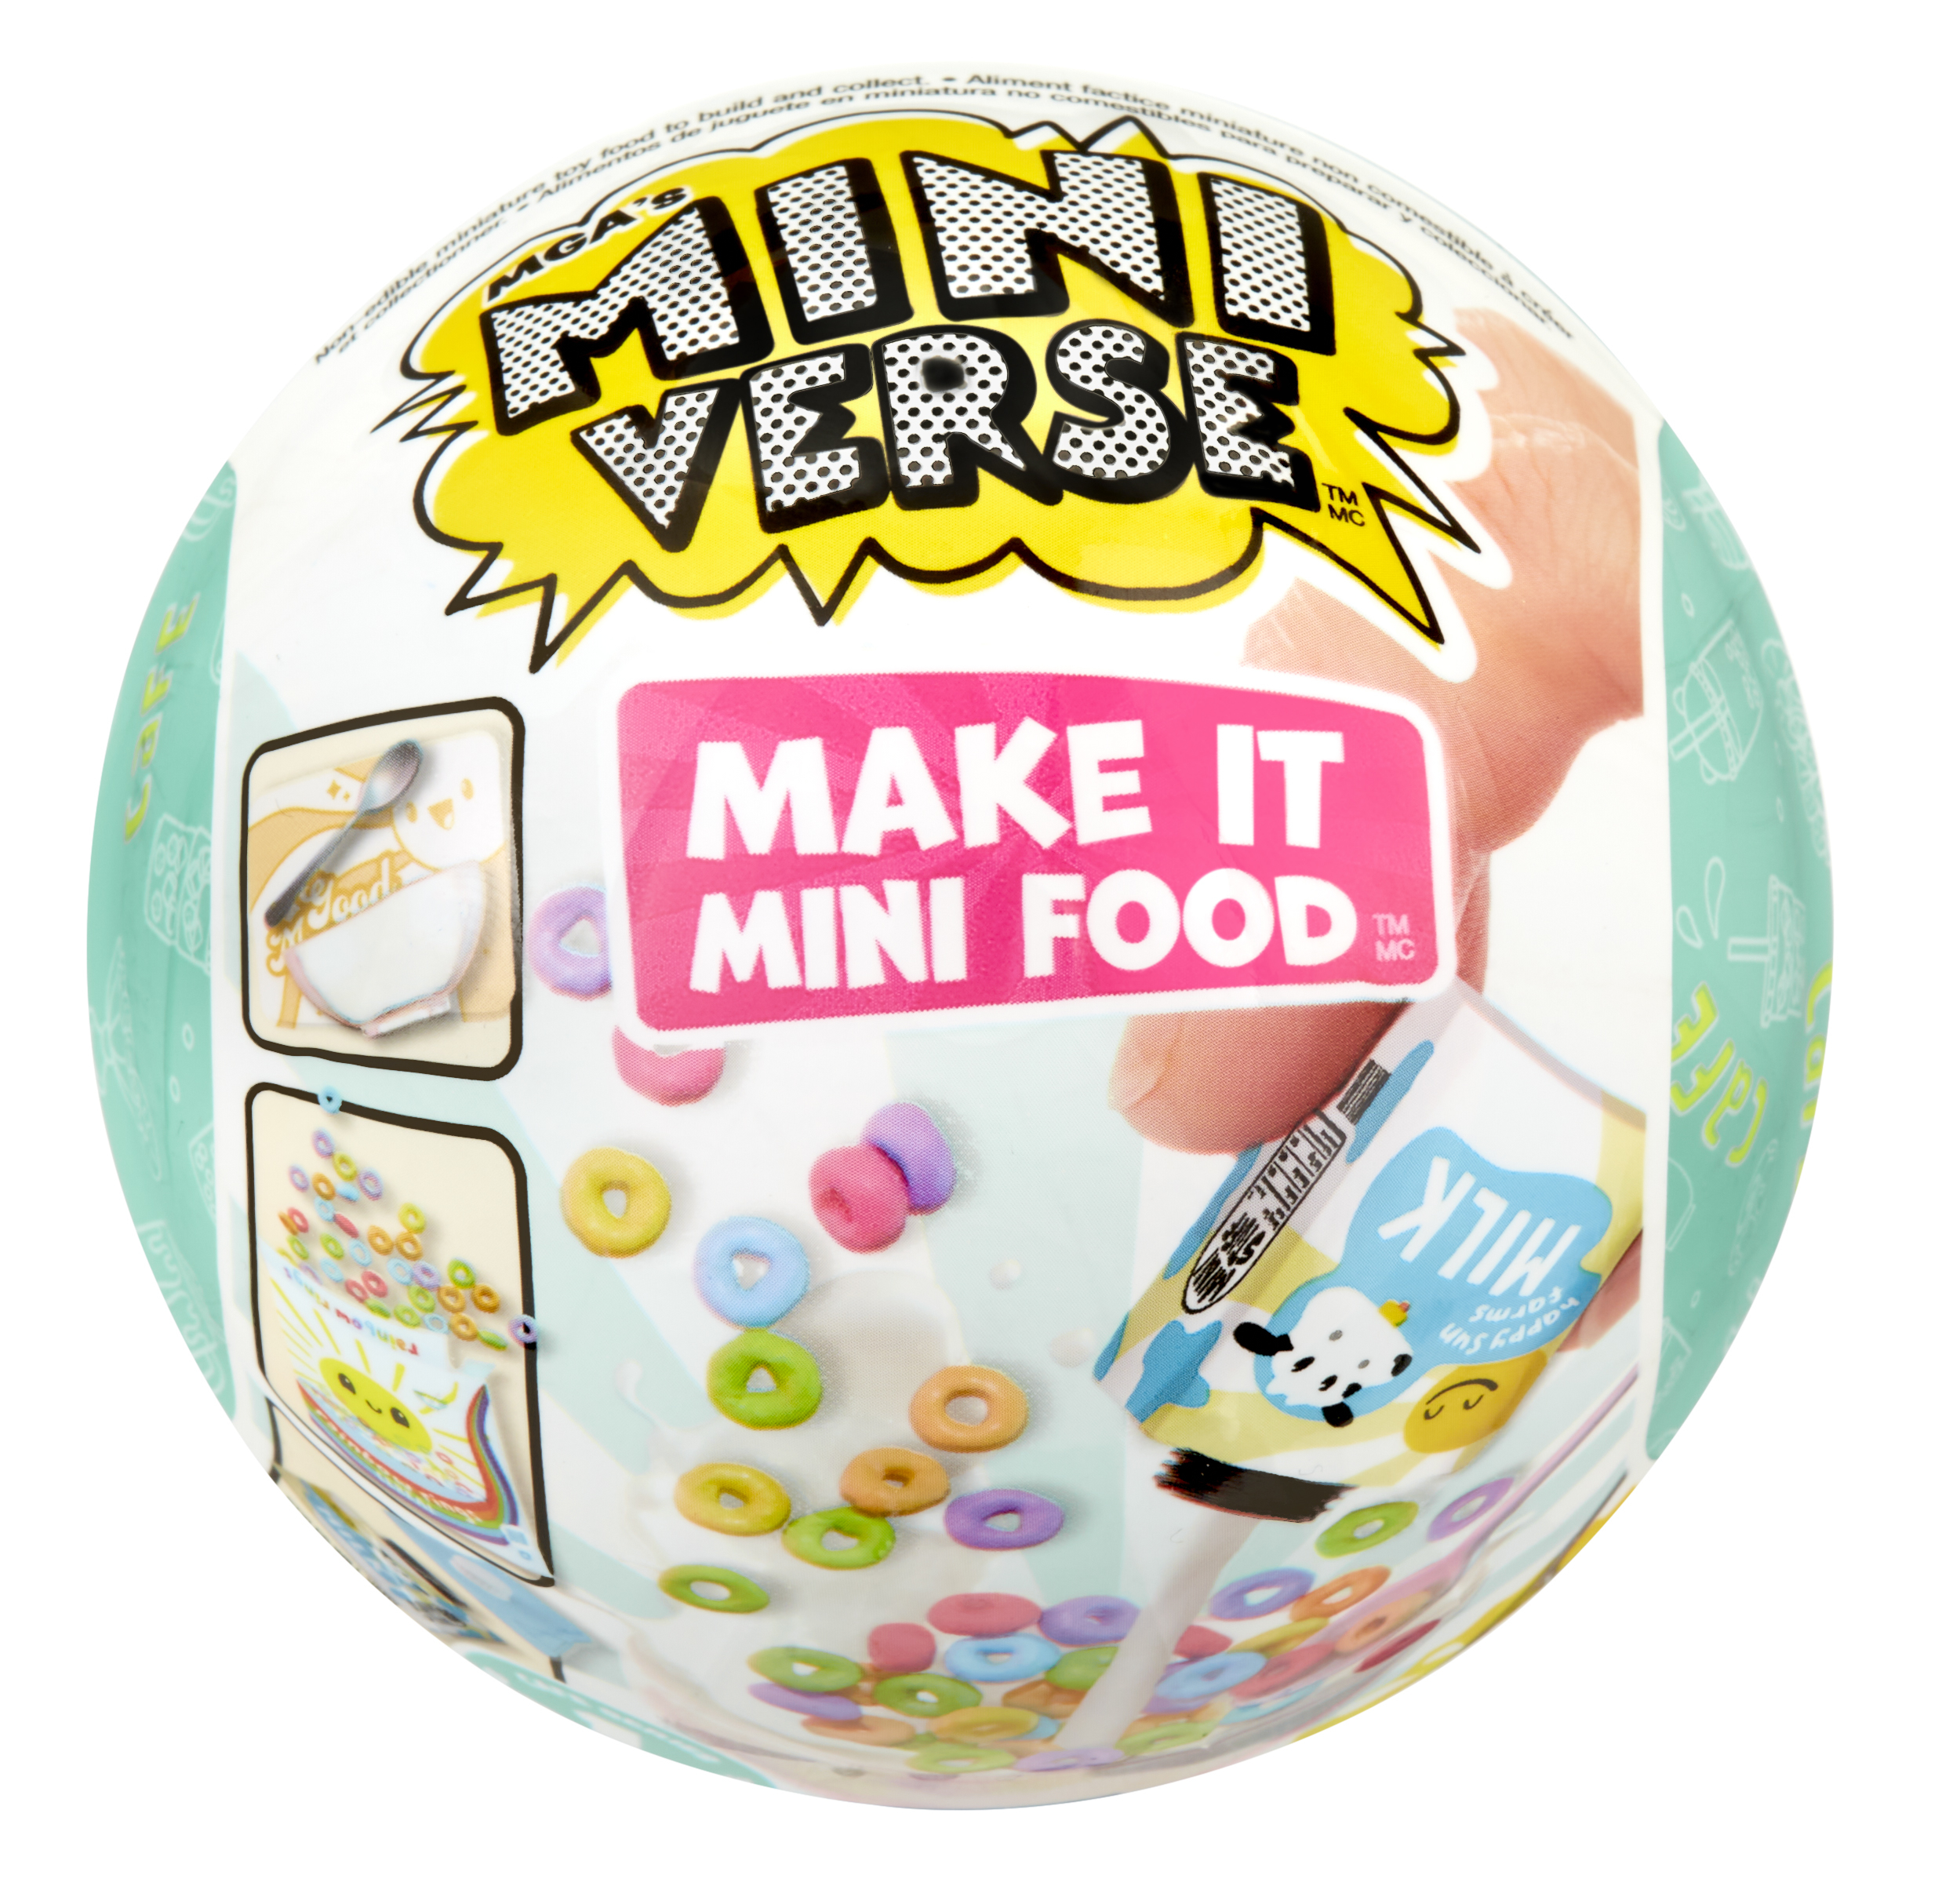 Miniverse: Make It Mini Food - Diner